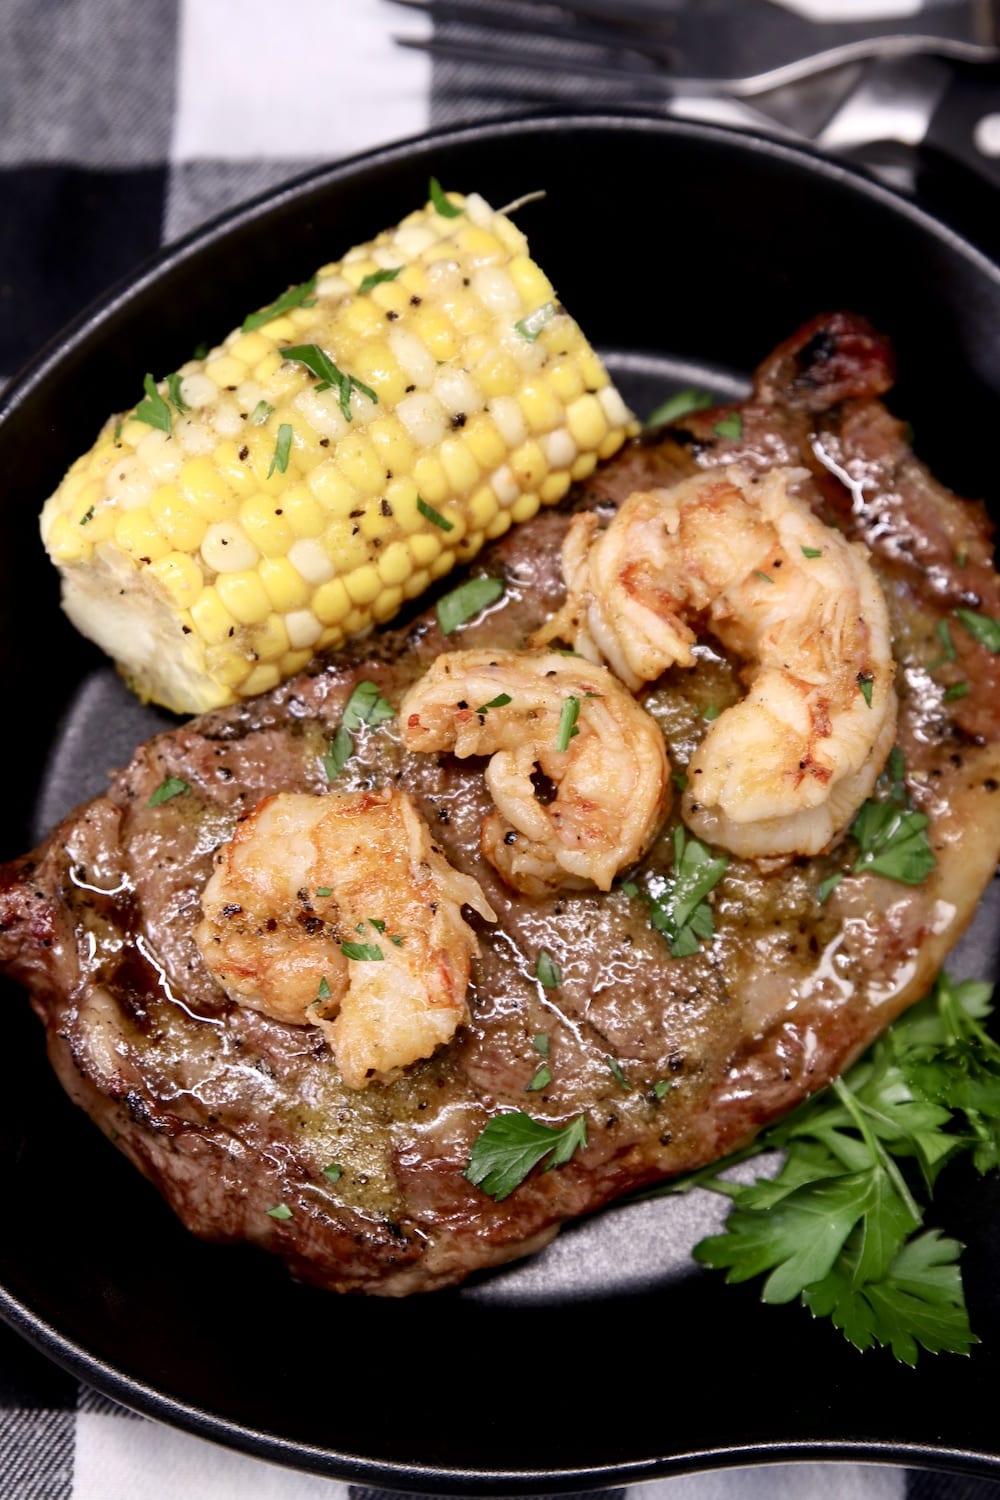 serving skillet with grilled steak, 3 shrimp, corn on the cob